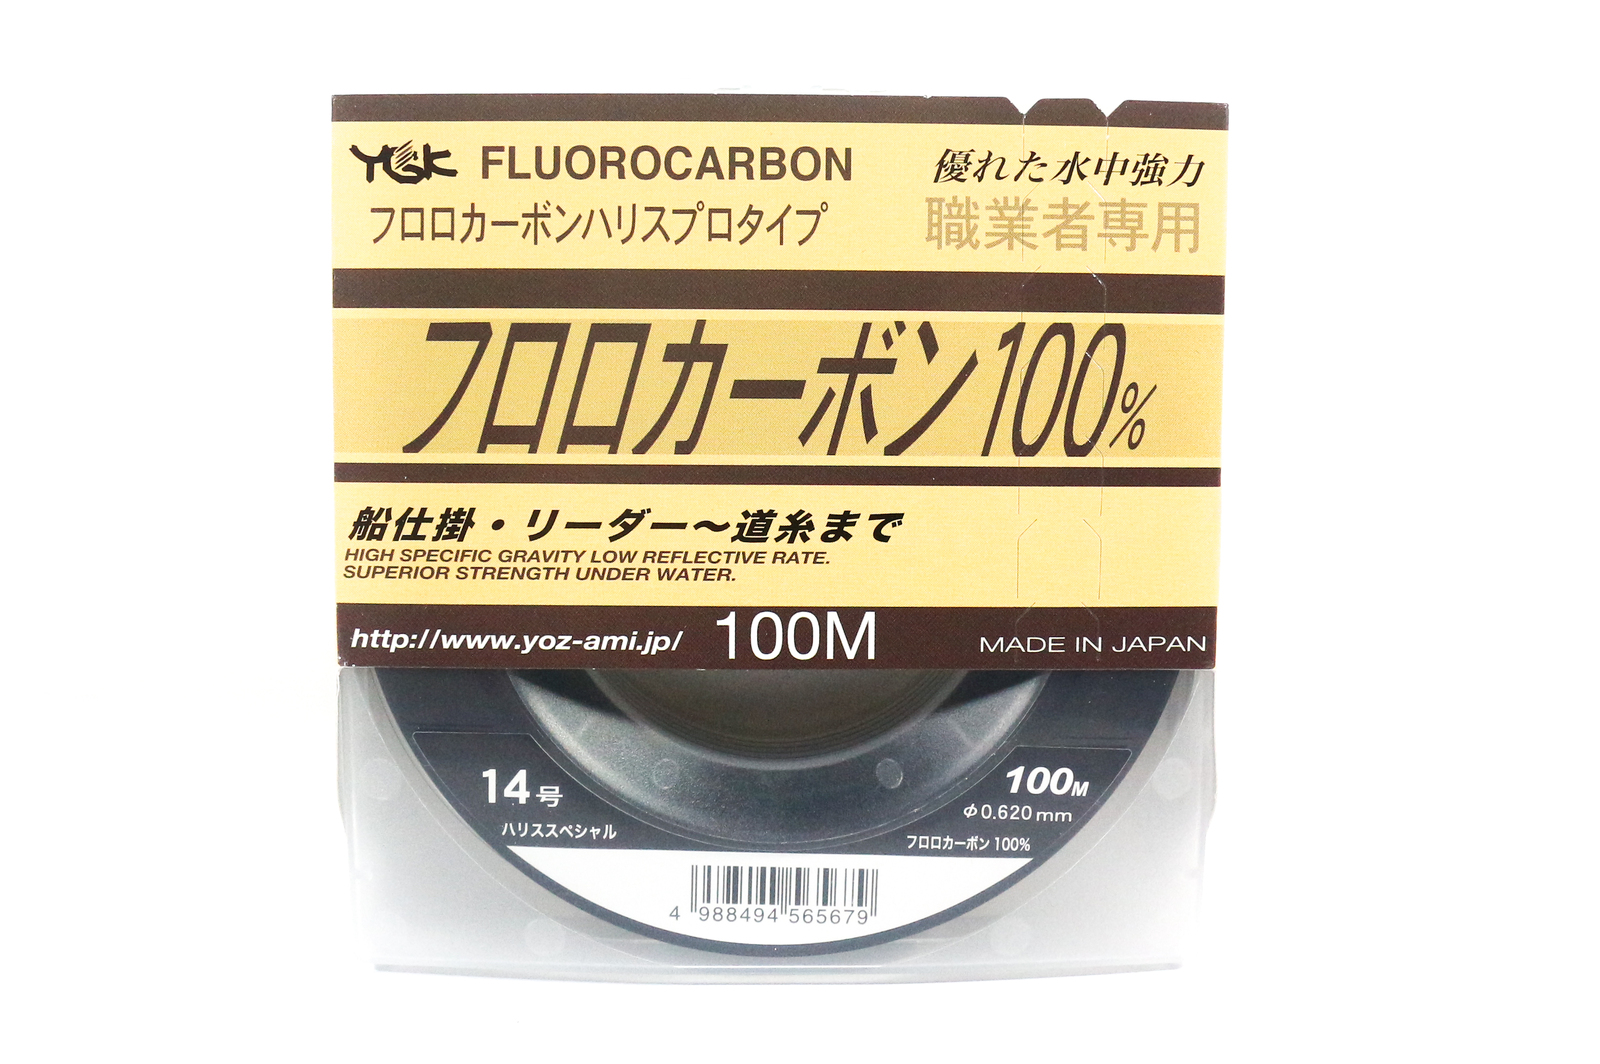 YGK Shokugyosha 100% Fluorocarbon Fishing Leader 100m #50lb